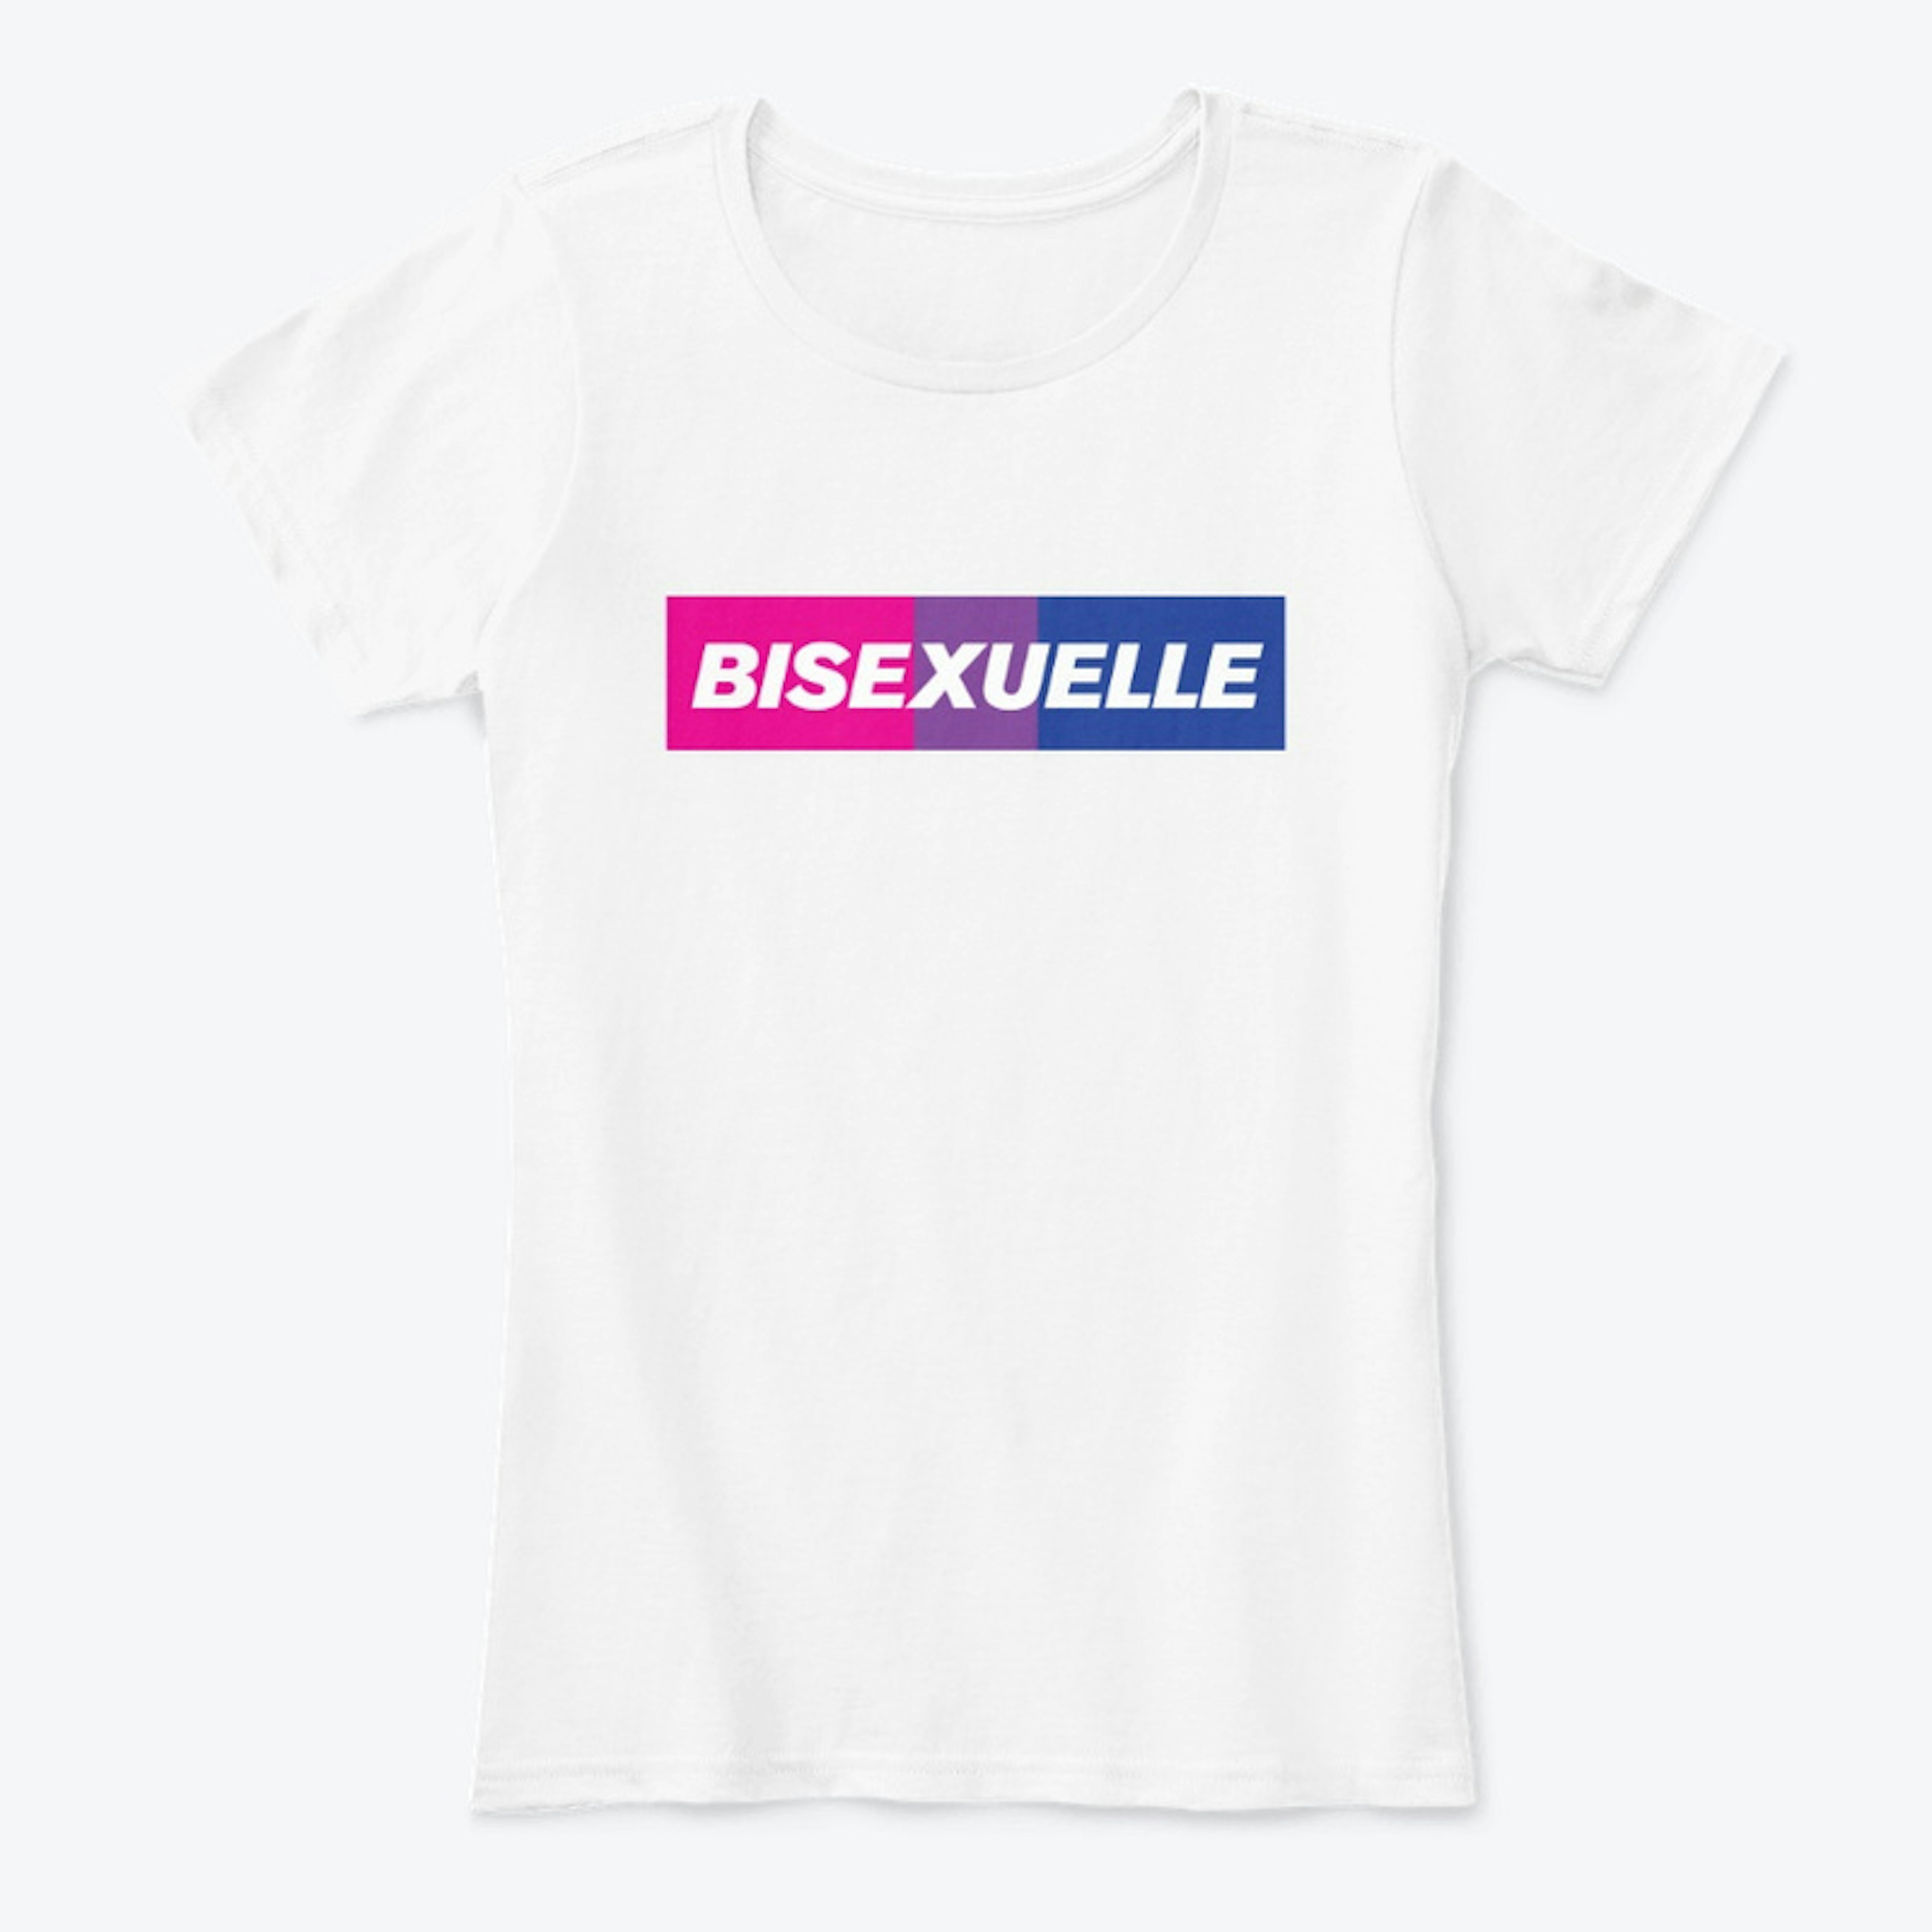 Bisexuelle - female